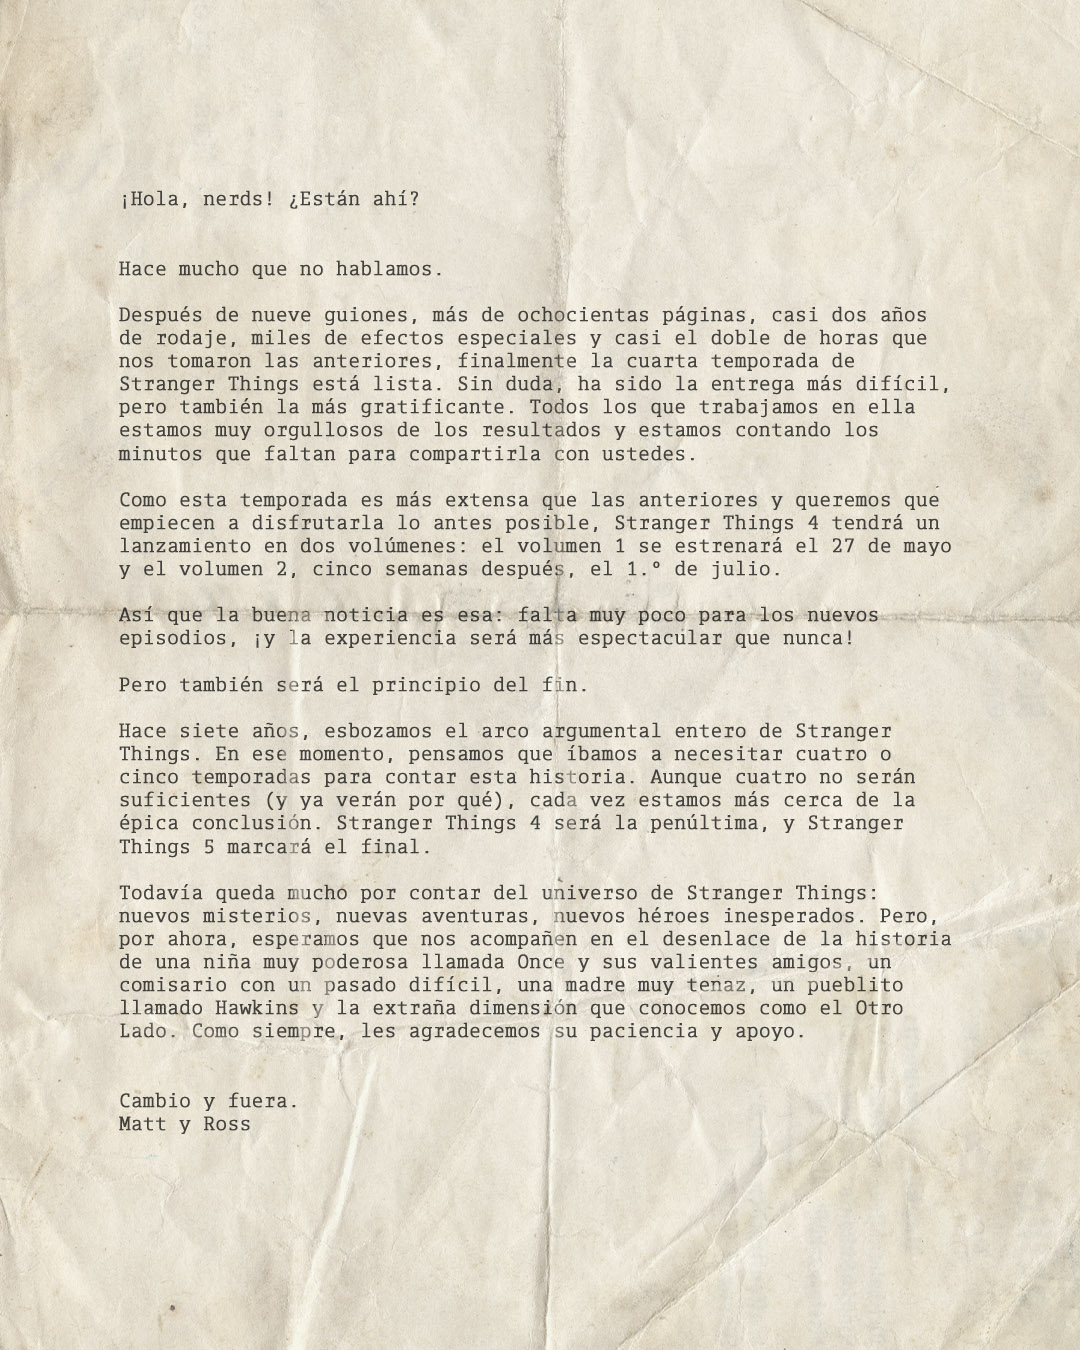 Stranger Things, Temporada 4: carta de los hermanos Duffer acerca del estreno en Netflix